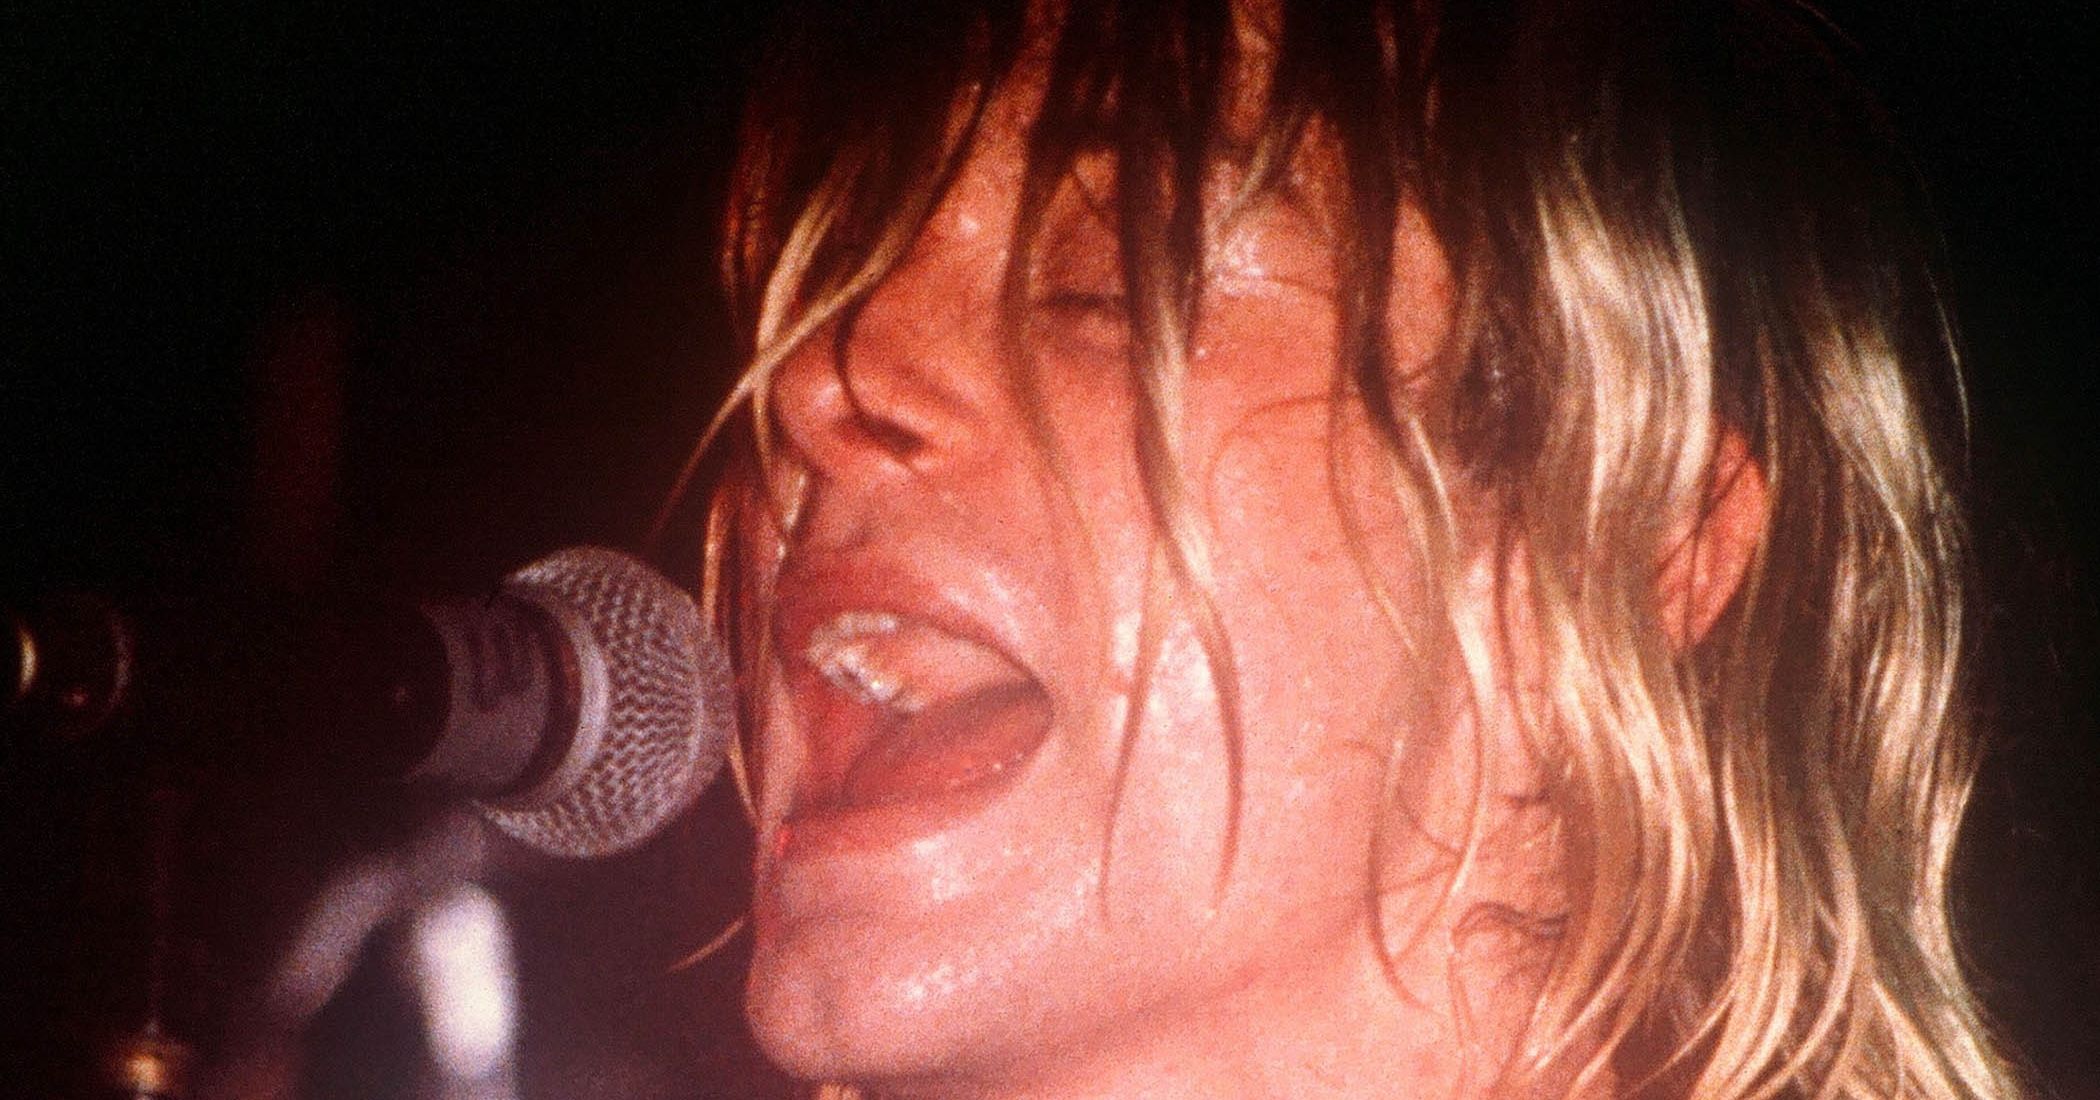 Kurt Cobain Had 